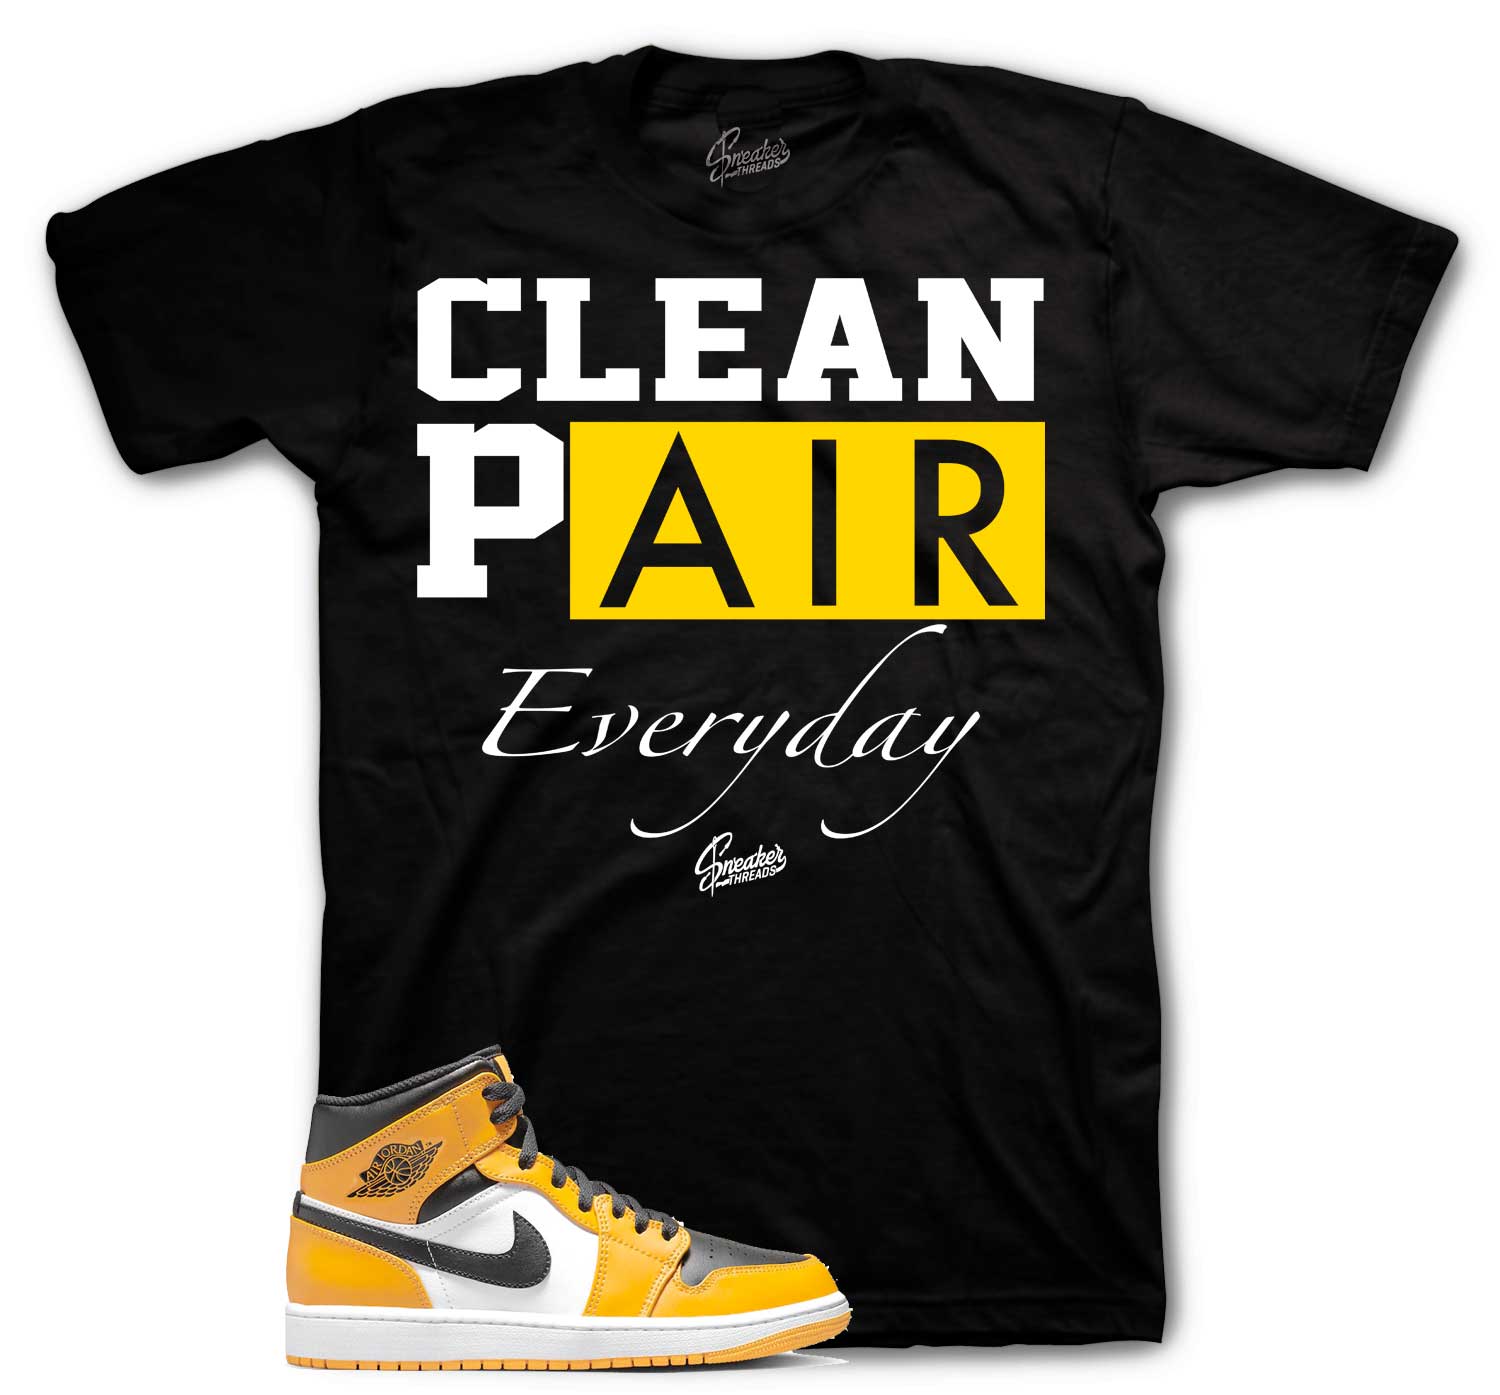 Retro 1 Taxi Shirt - Clean Pair - Black